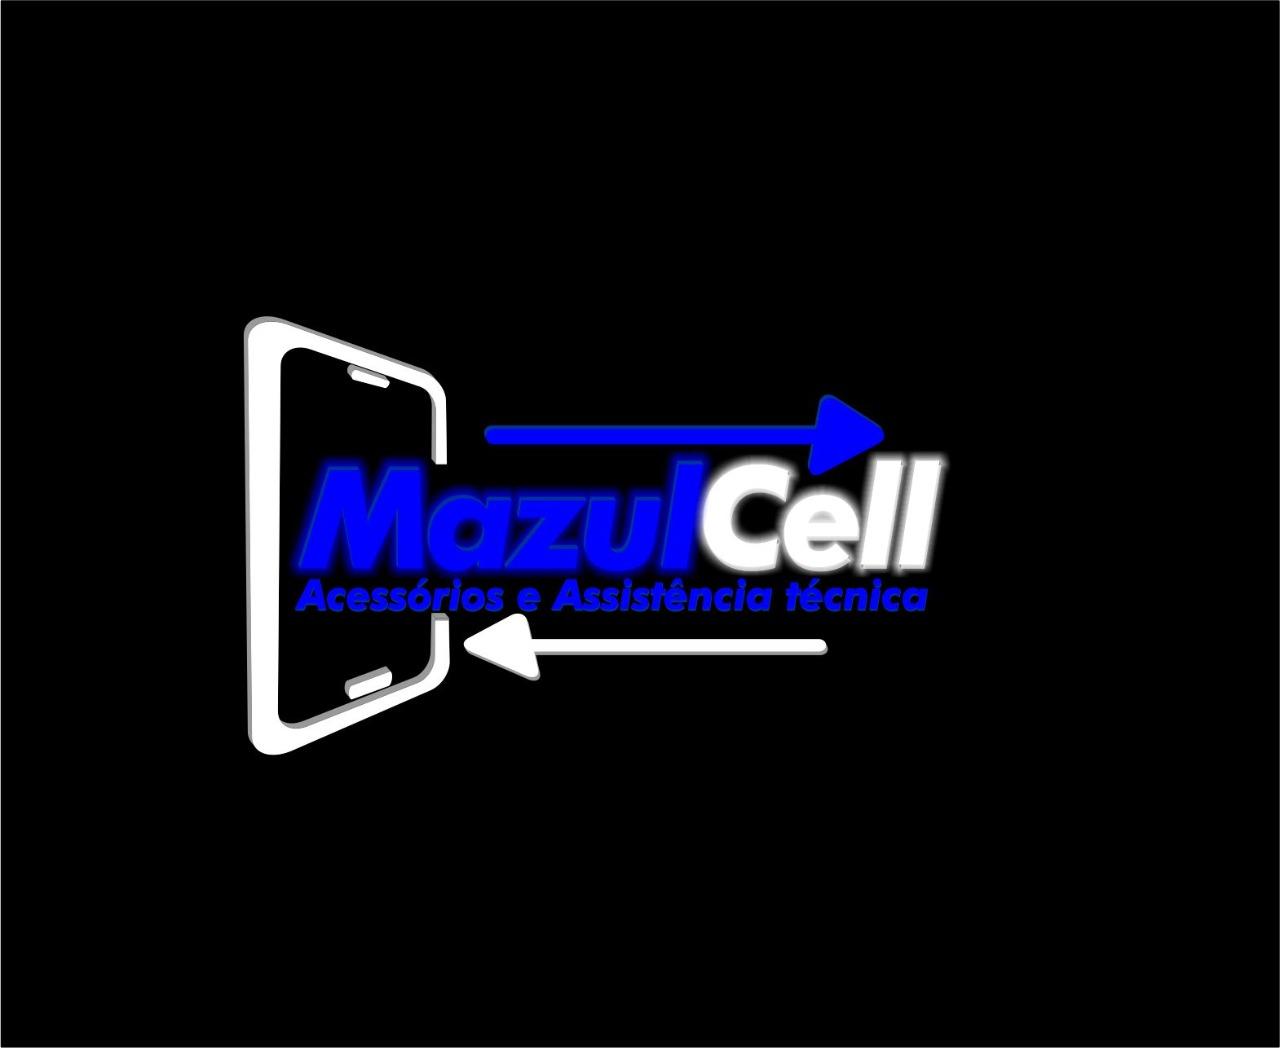 Mazul Cell Acessórios e Assistência técnica